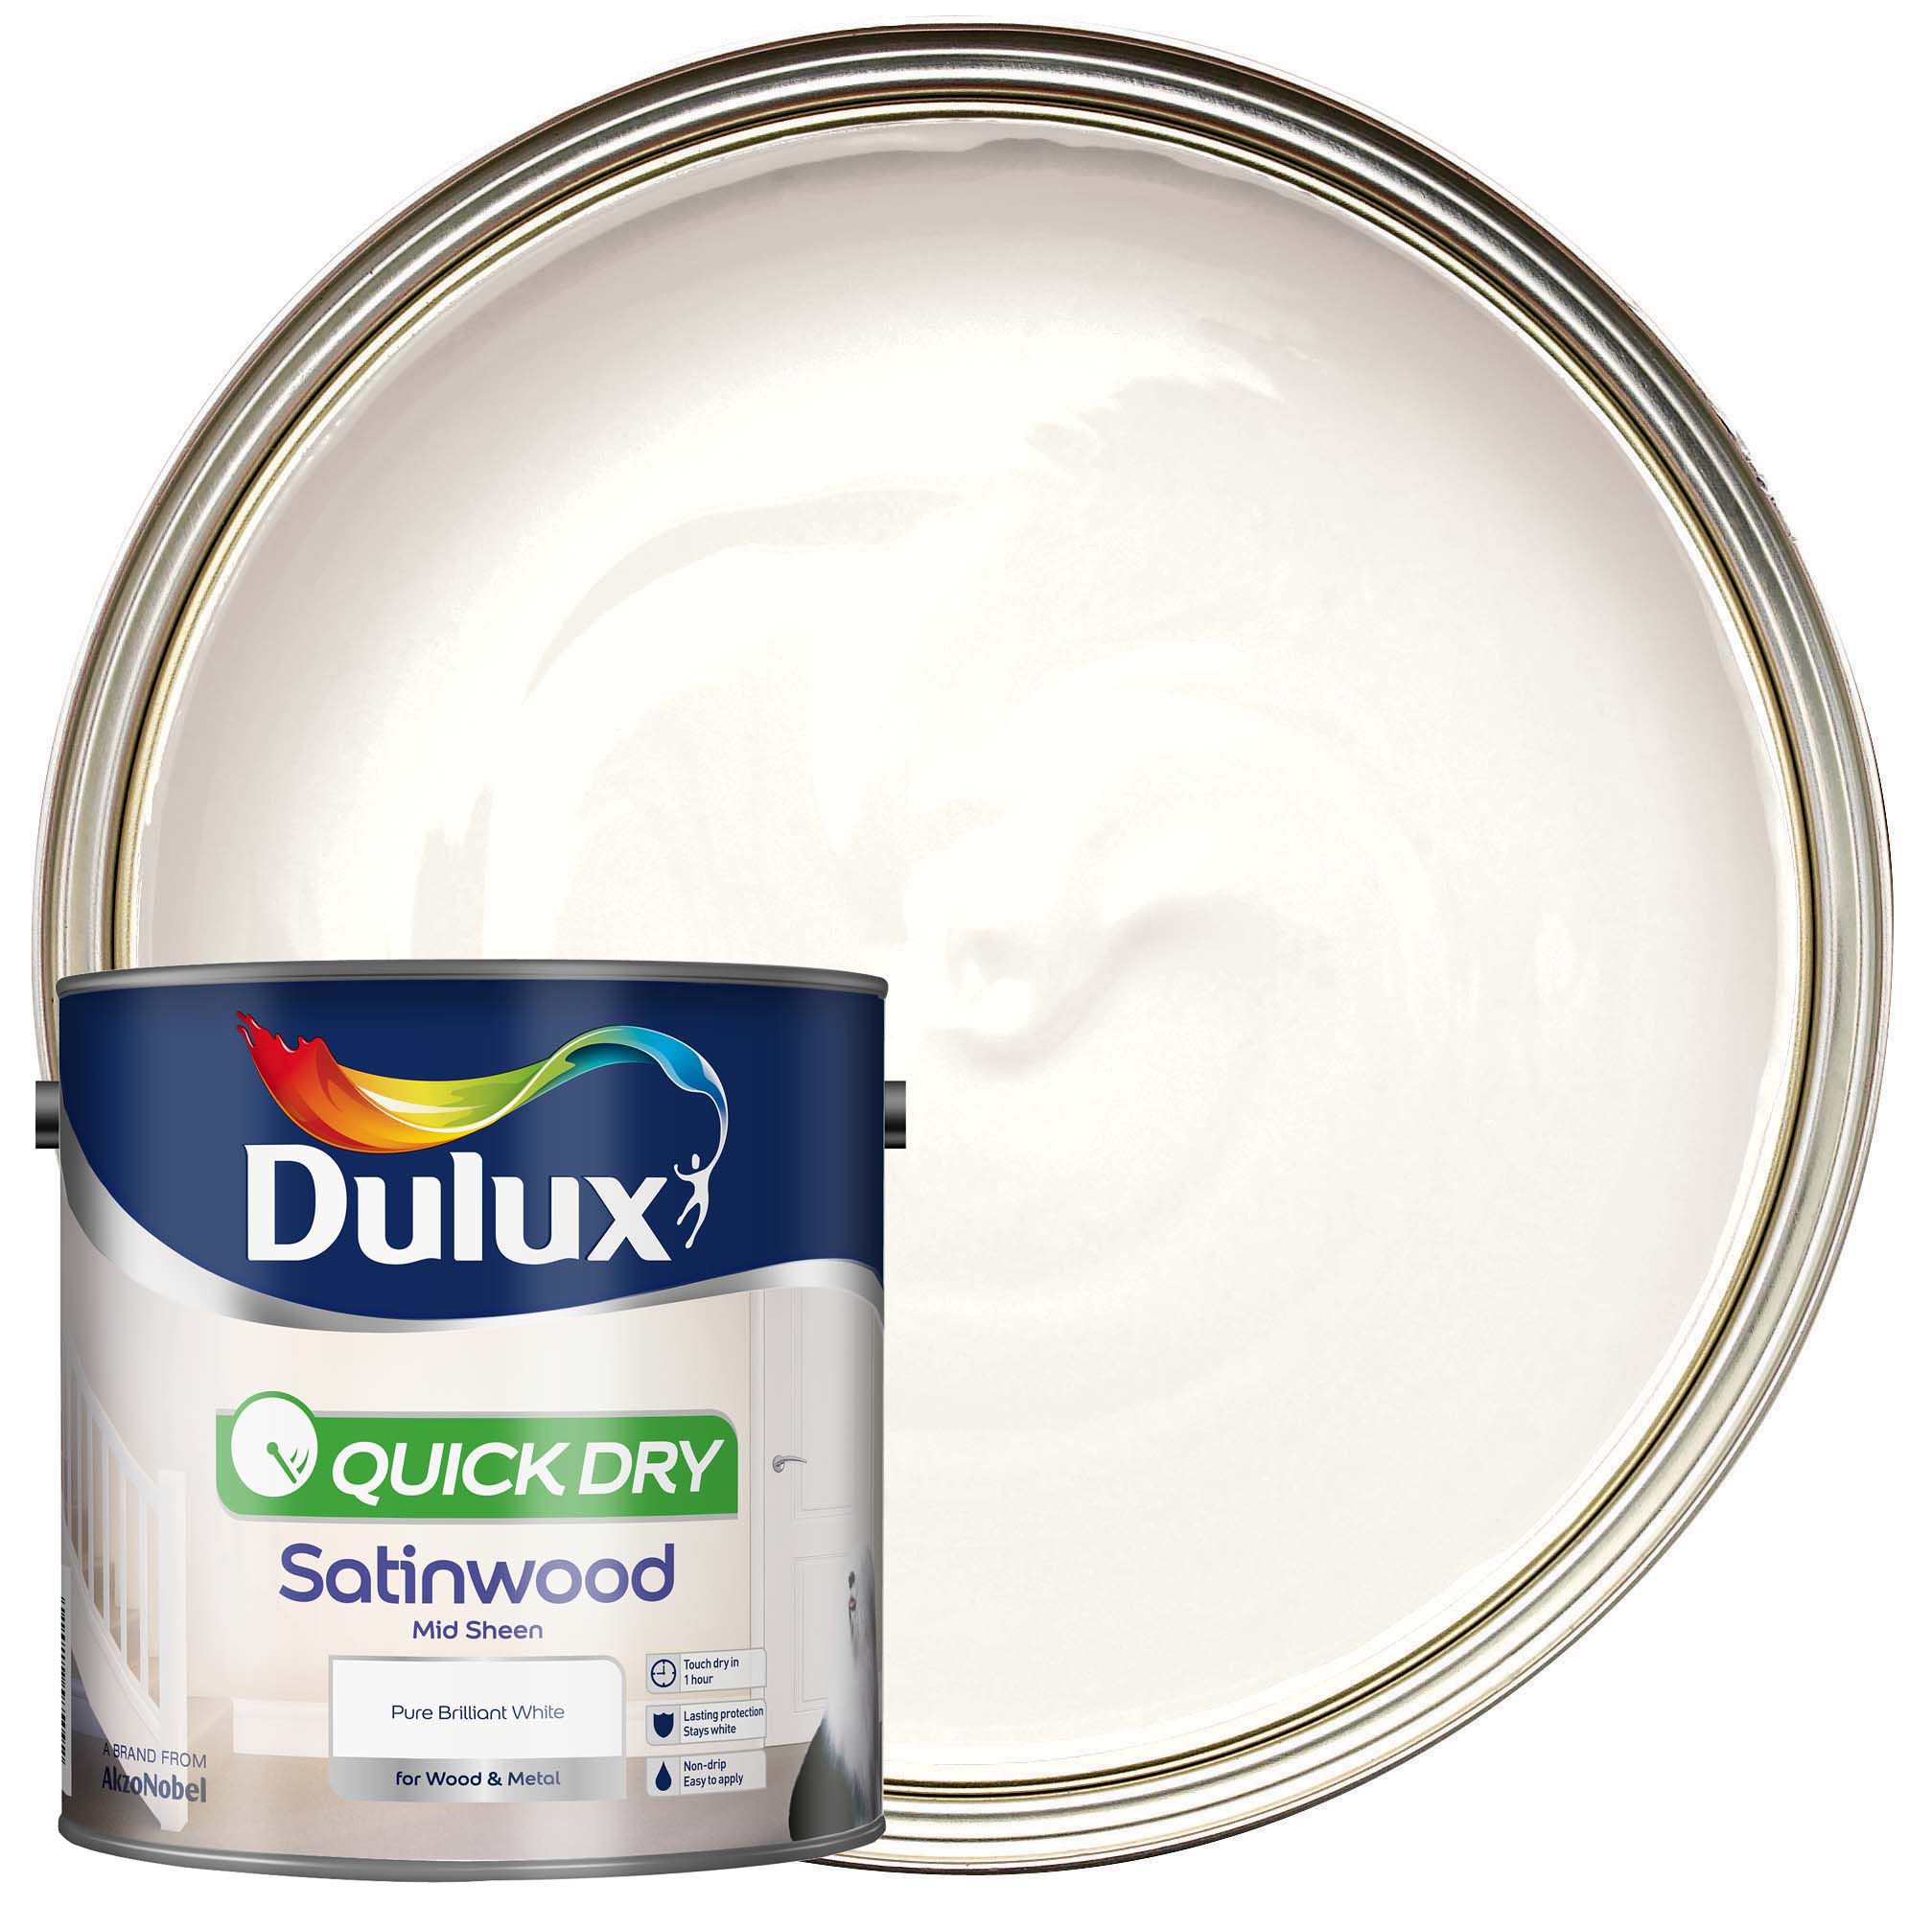 Dulux Quick Dry Satinwood Paint - Pure Brilliant White - 2.5L